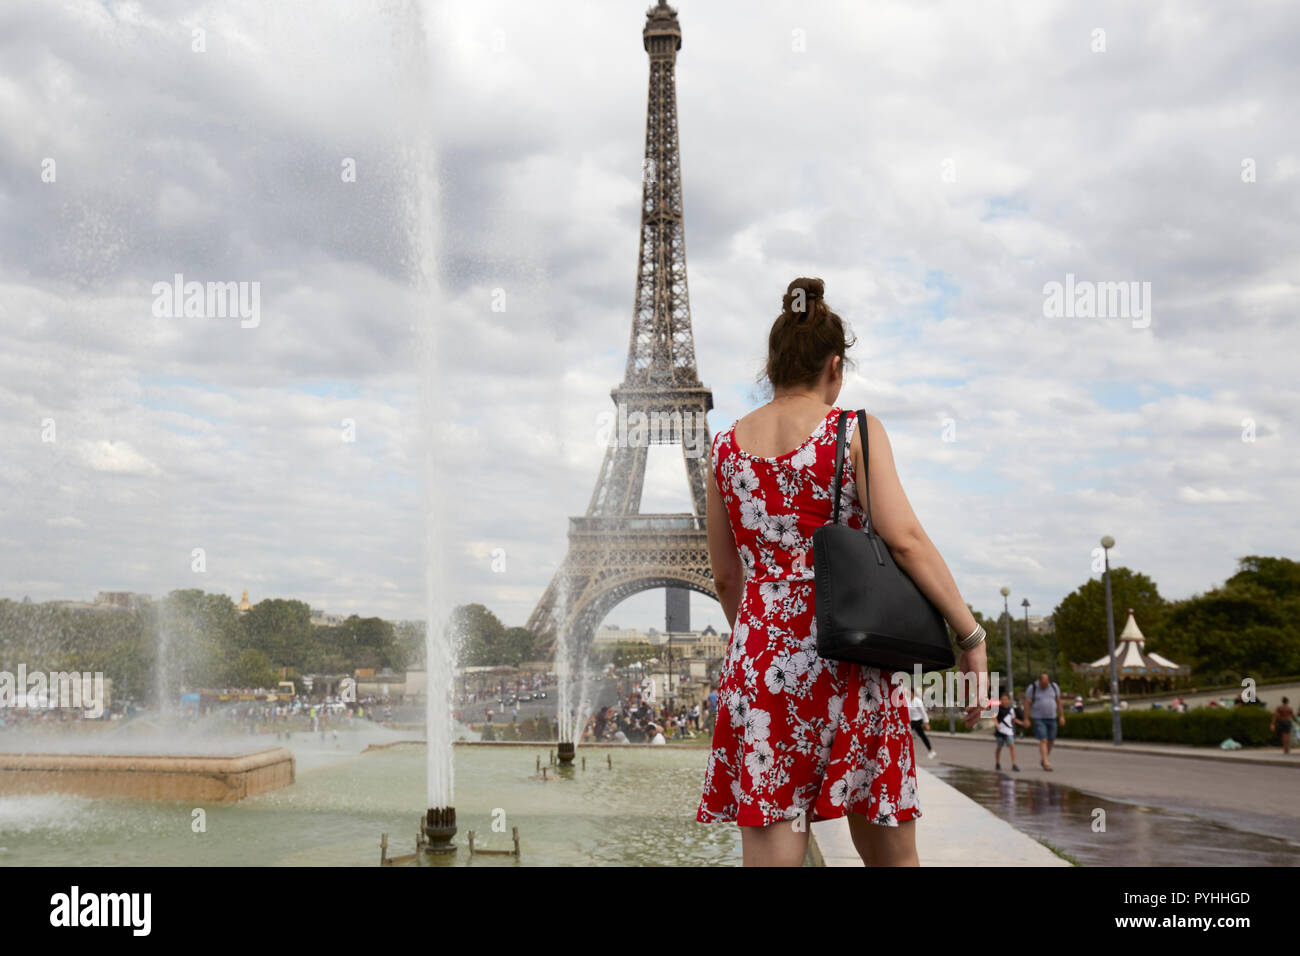 Paris, Ile-de-France, France - une femme avec une robe rouge et blanche à la fontaine dans les Jardins du Trocadéro avec la Tour Eiffel en arrière-plan. Banque D'Images